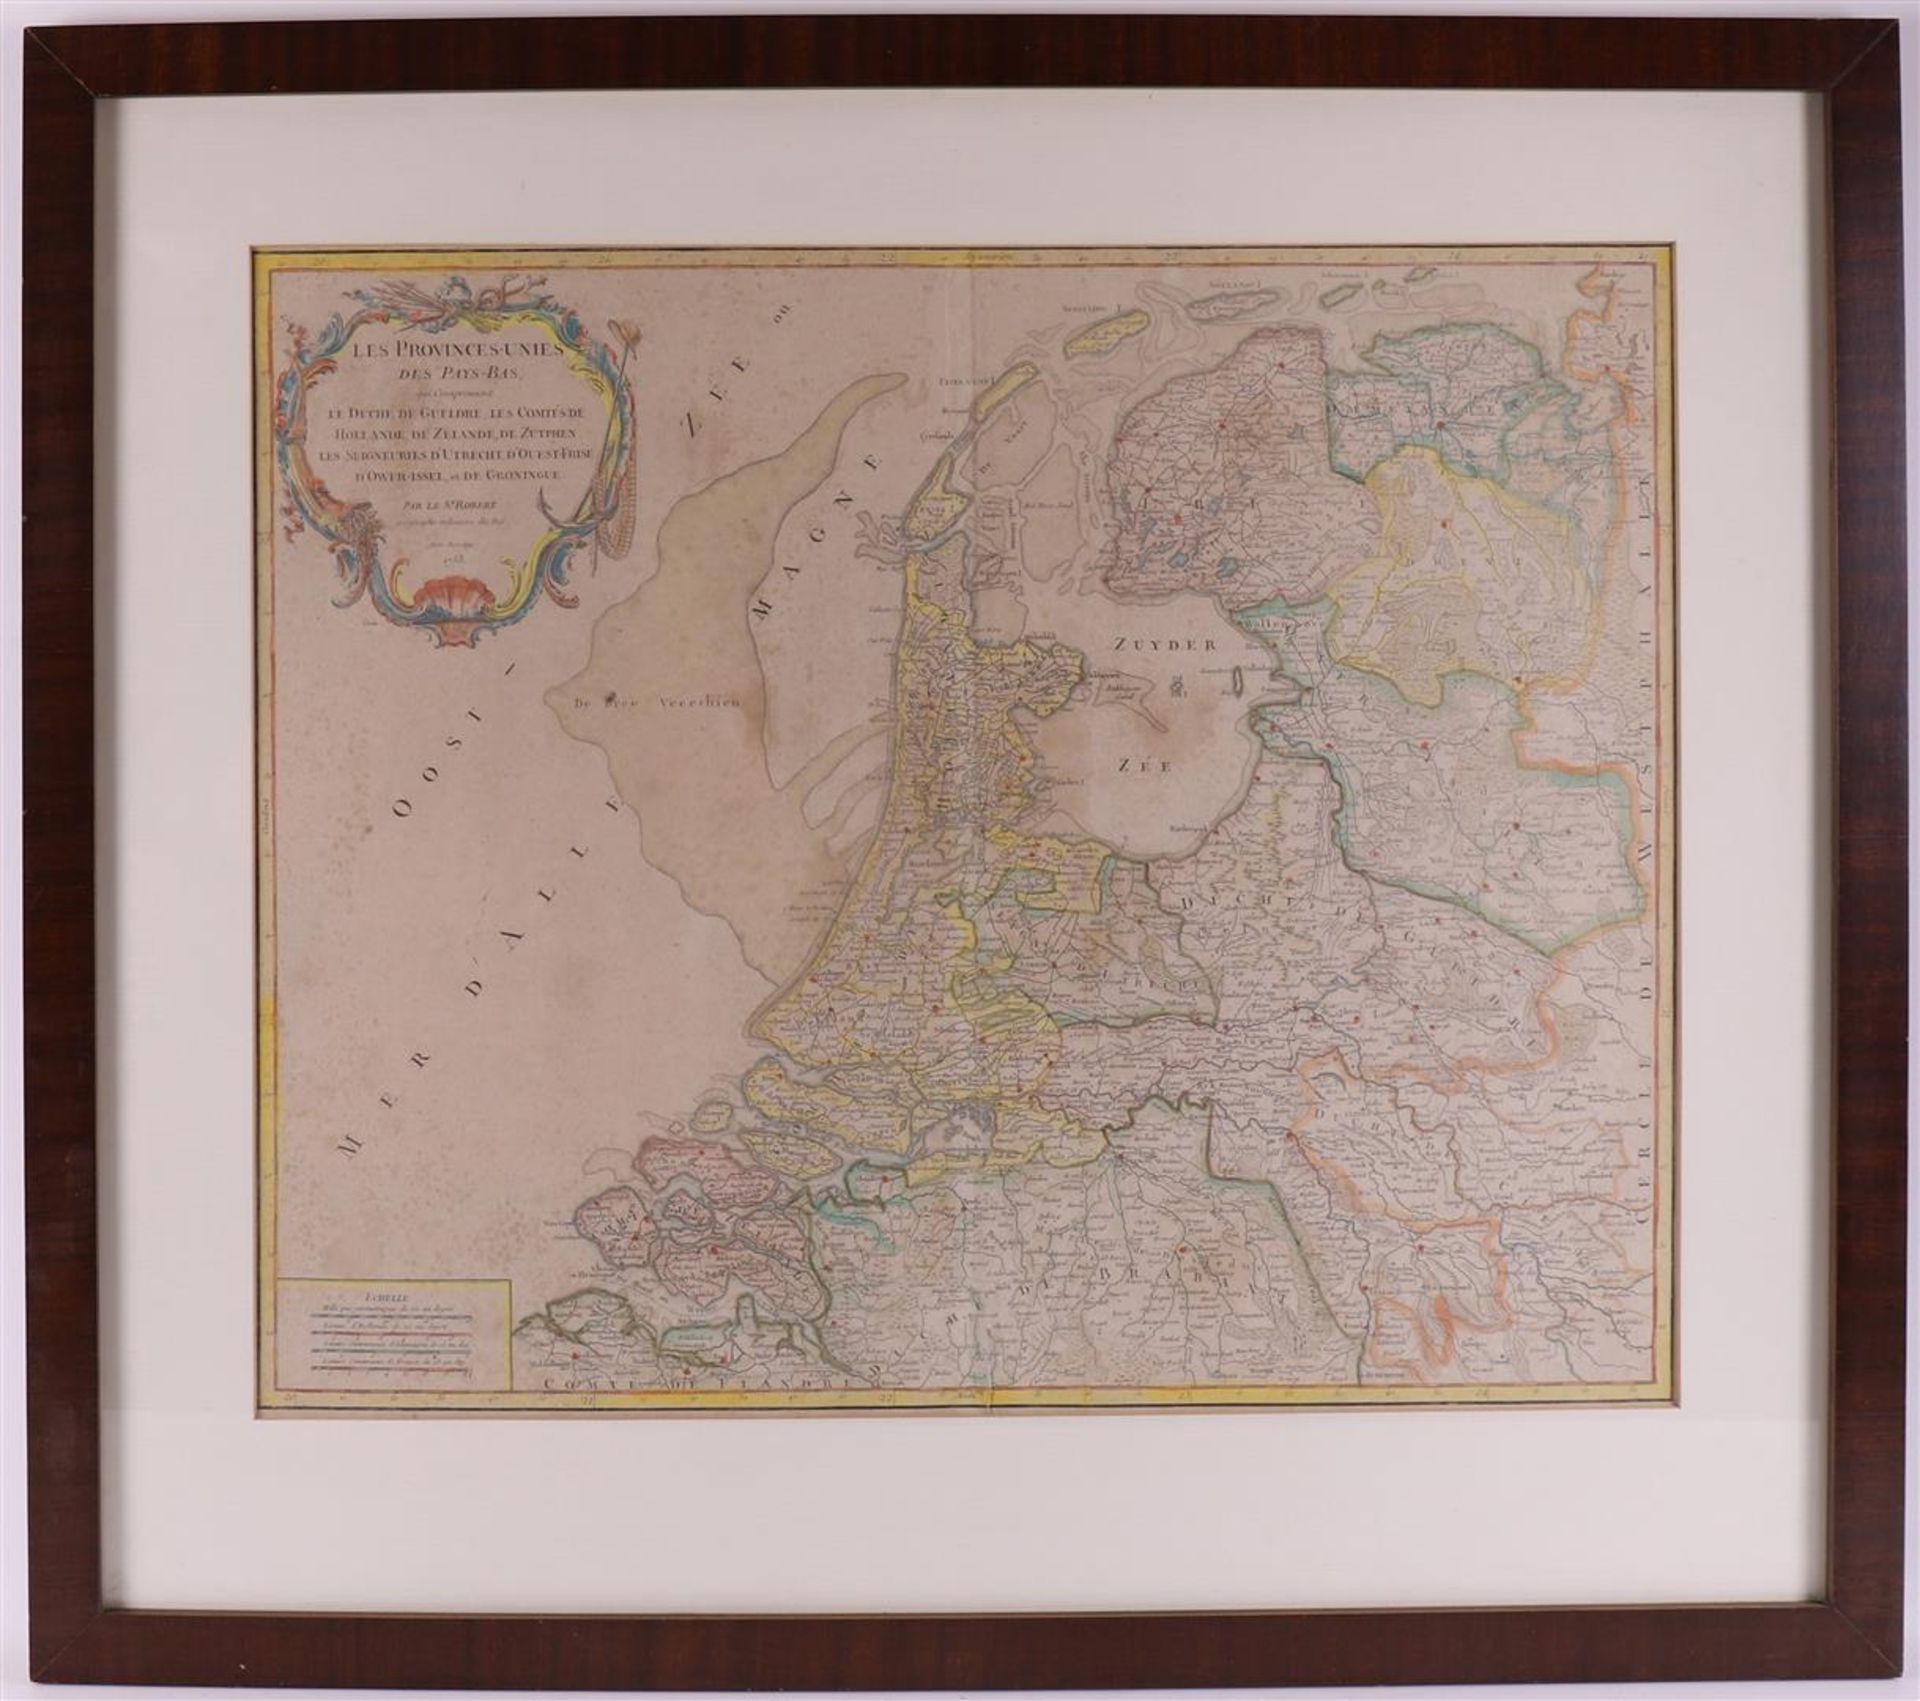 Topography. Les Provinces-Unies des Pays-Bas, qui comprennent le duché de Gueldre, les comtés de - Bild 2 aus 3